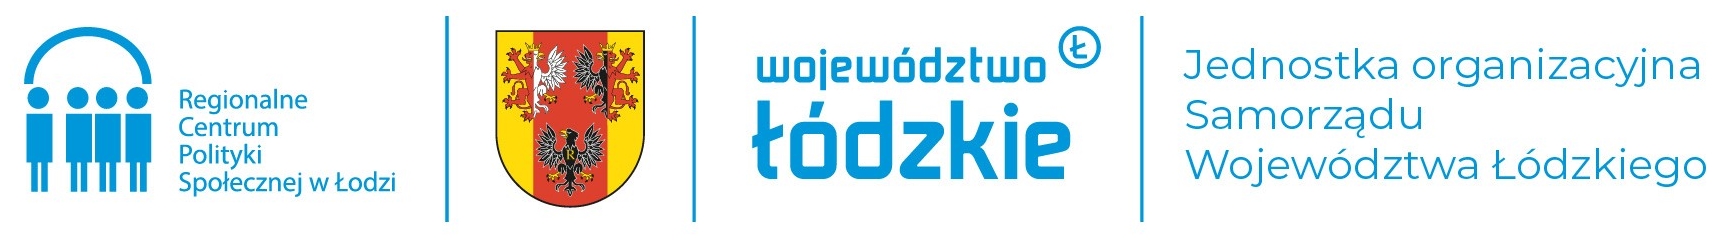 Logotyp Regionalnego Centrum Polityki Społecznej w Łodzi, Województwa Łódzkiego oraz projektu Zbudowanie systemu koordynacji LLL